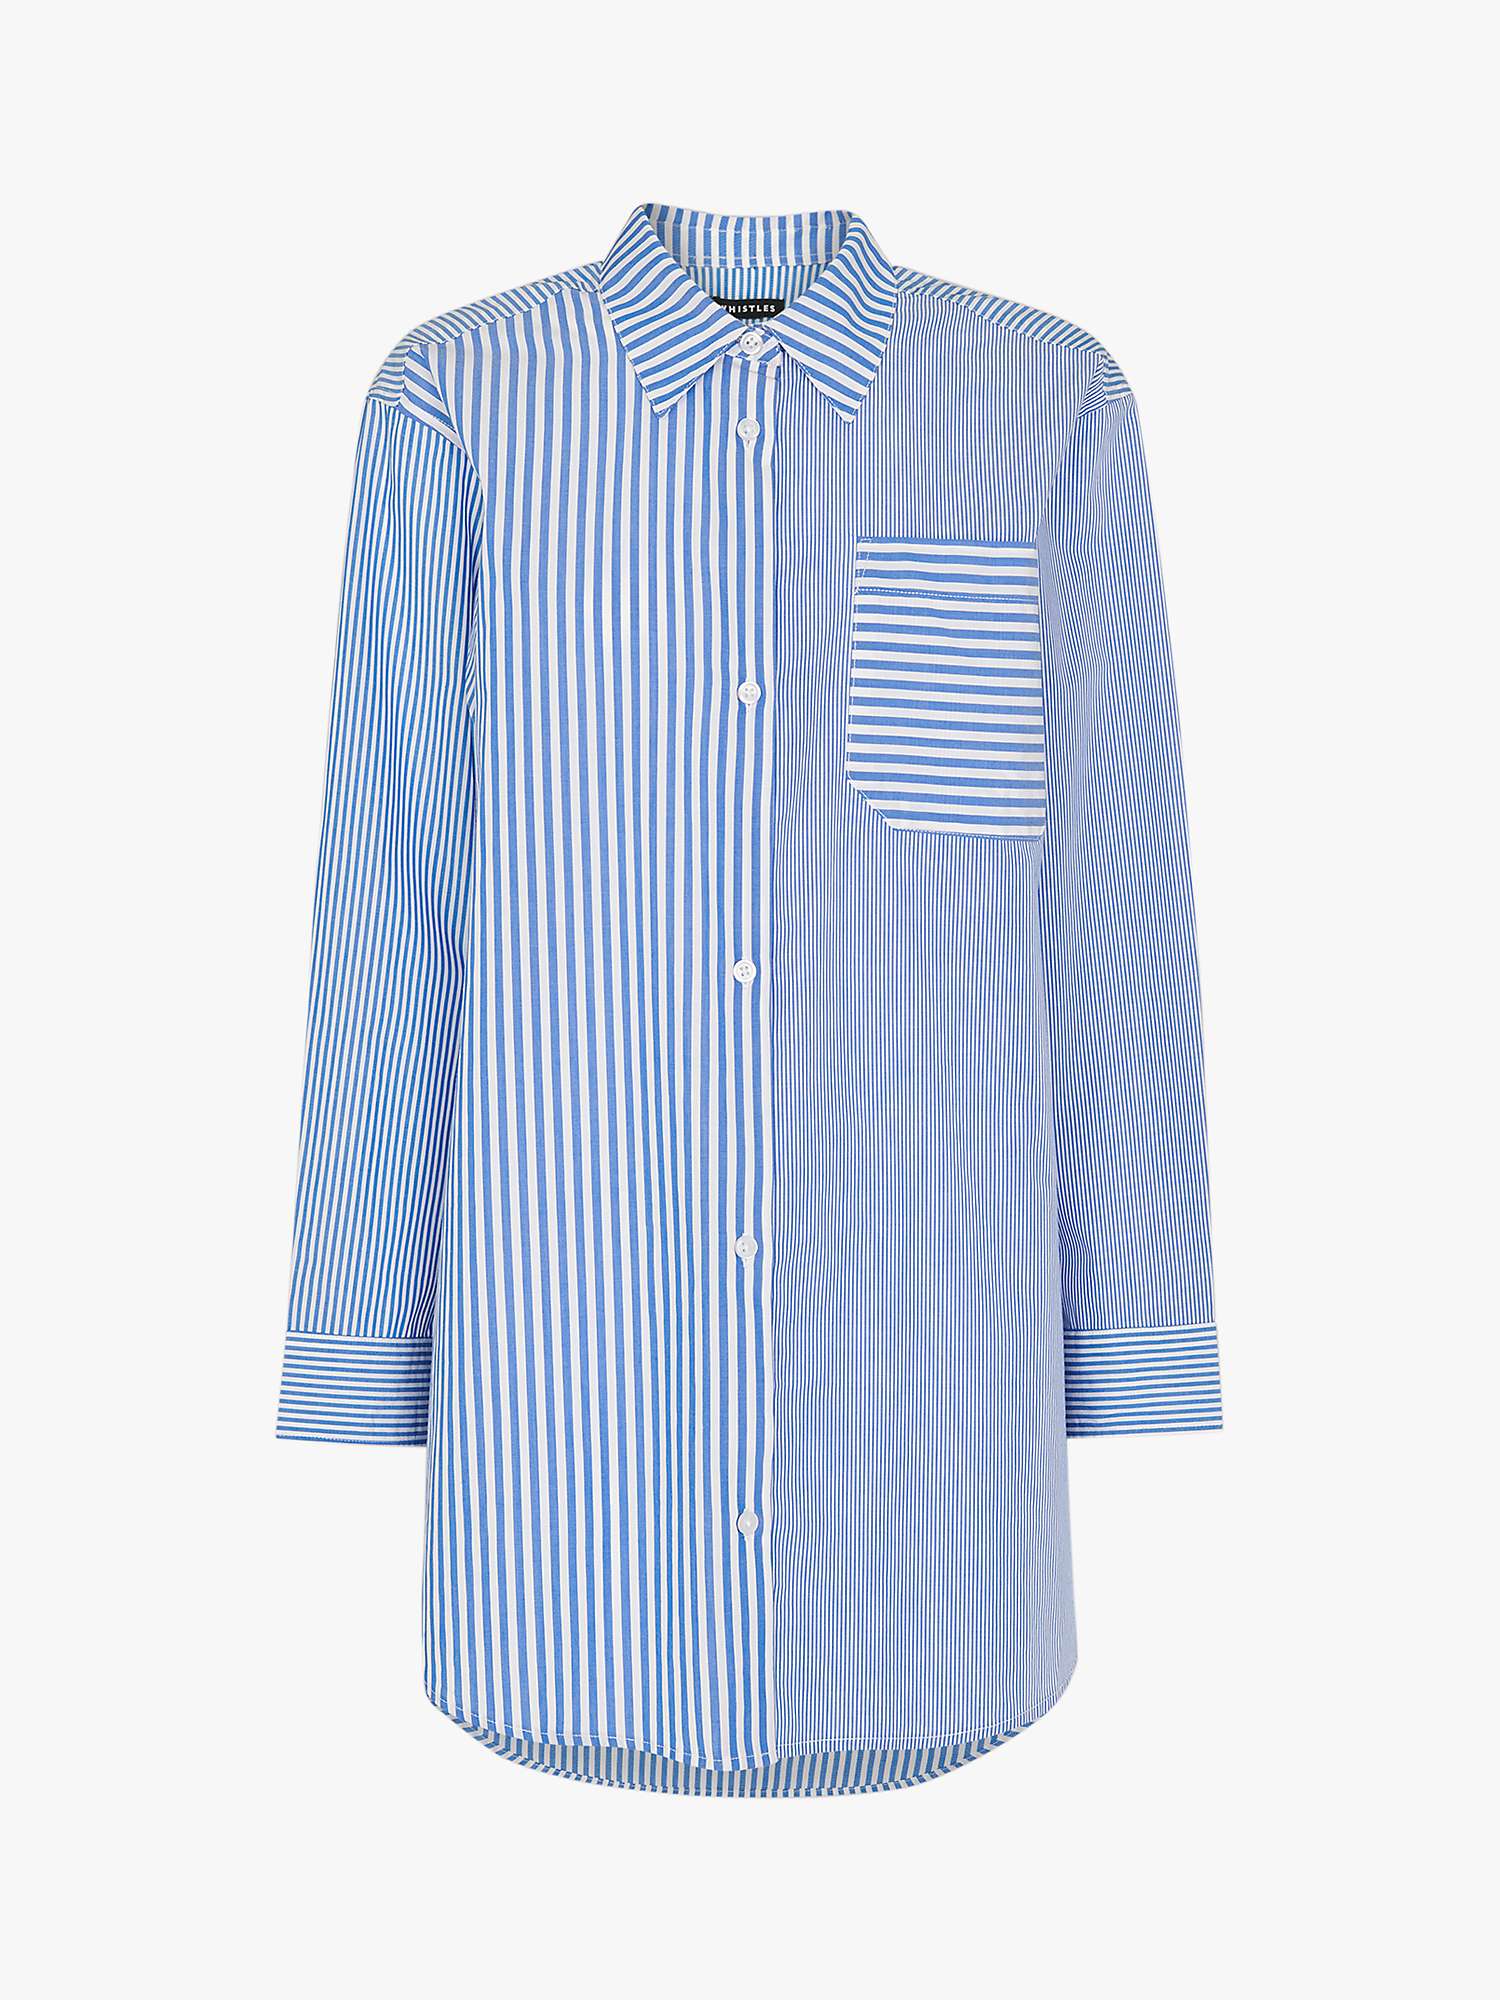 Buy Whistles Millie Stripe Oversized Shirt, Blue/Multi Online at johnlewis.com